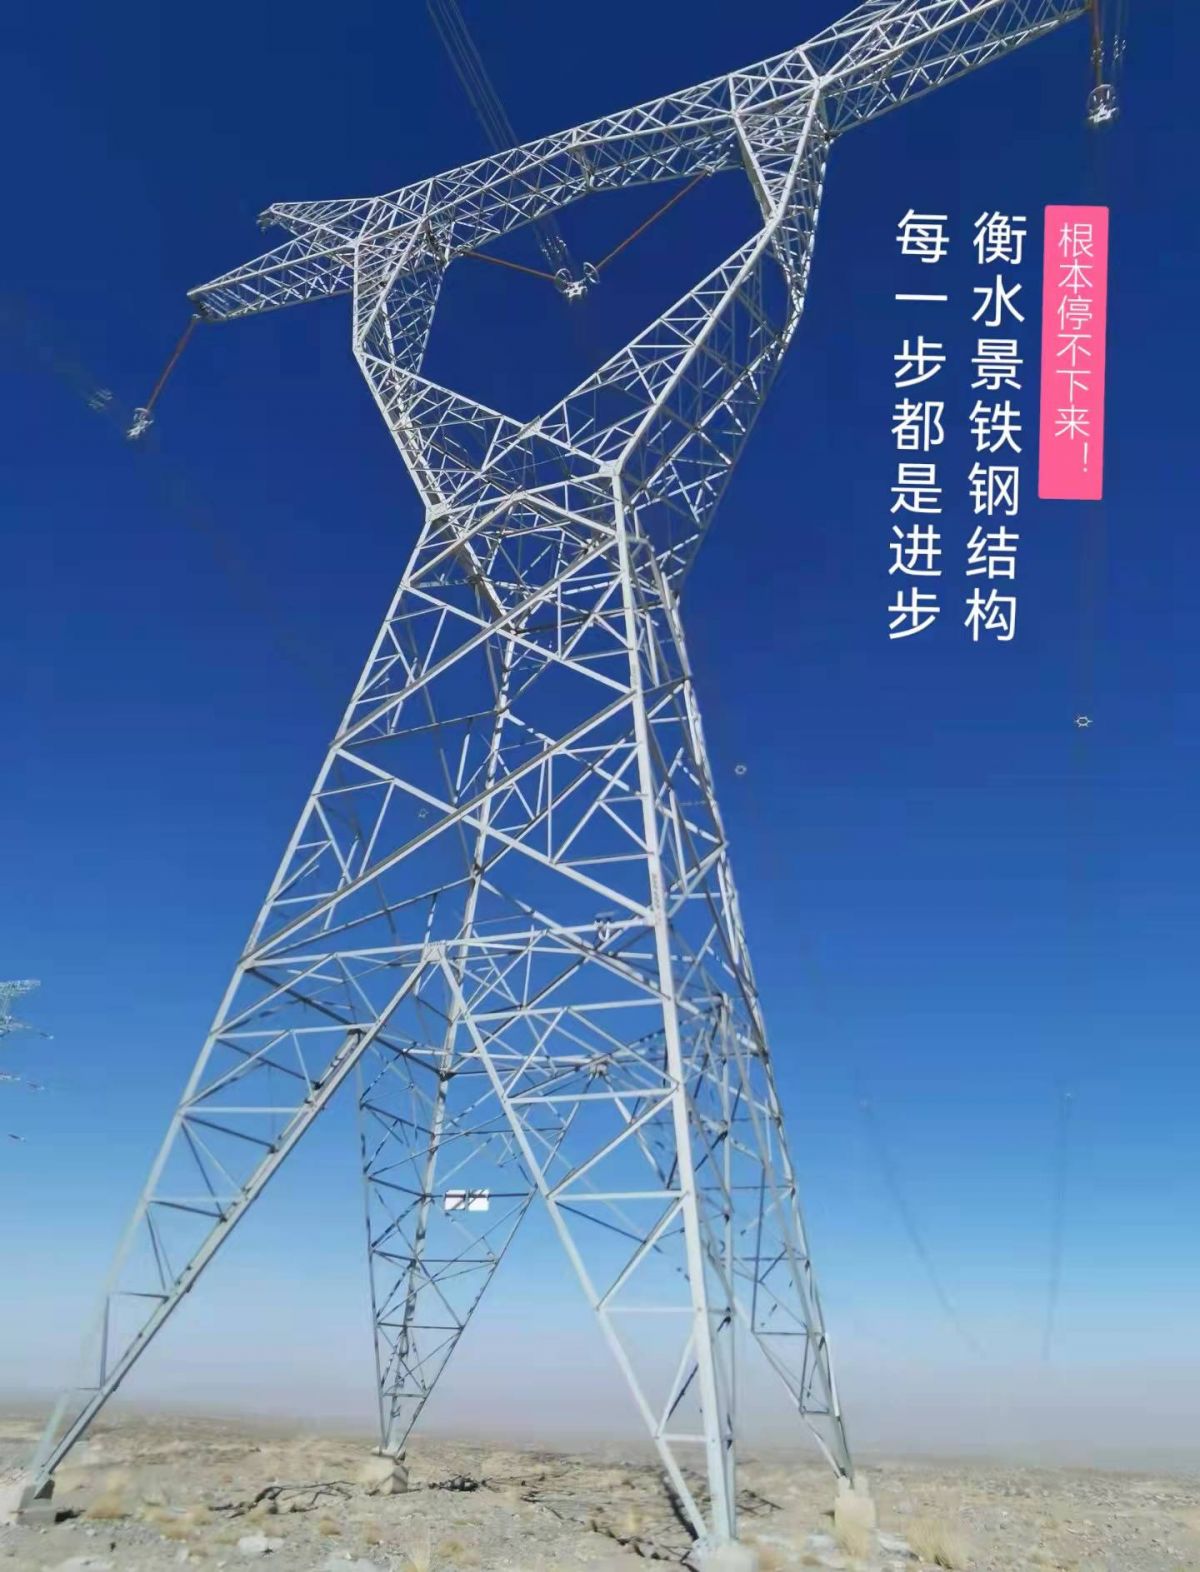 电力输送高压线铁塔的图片-千叶网